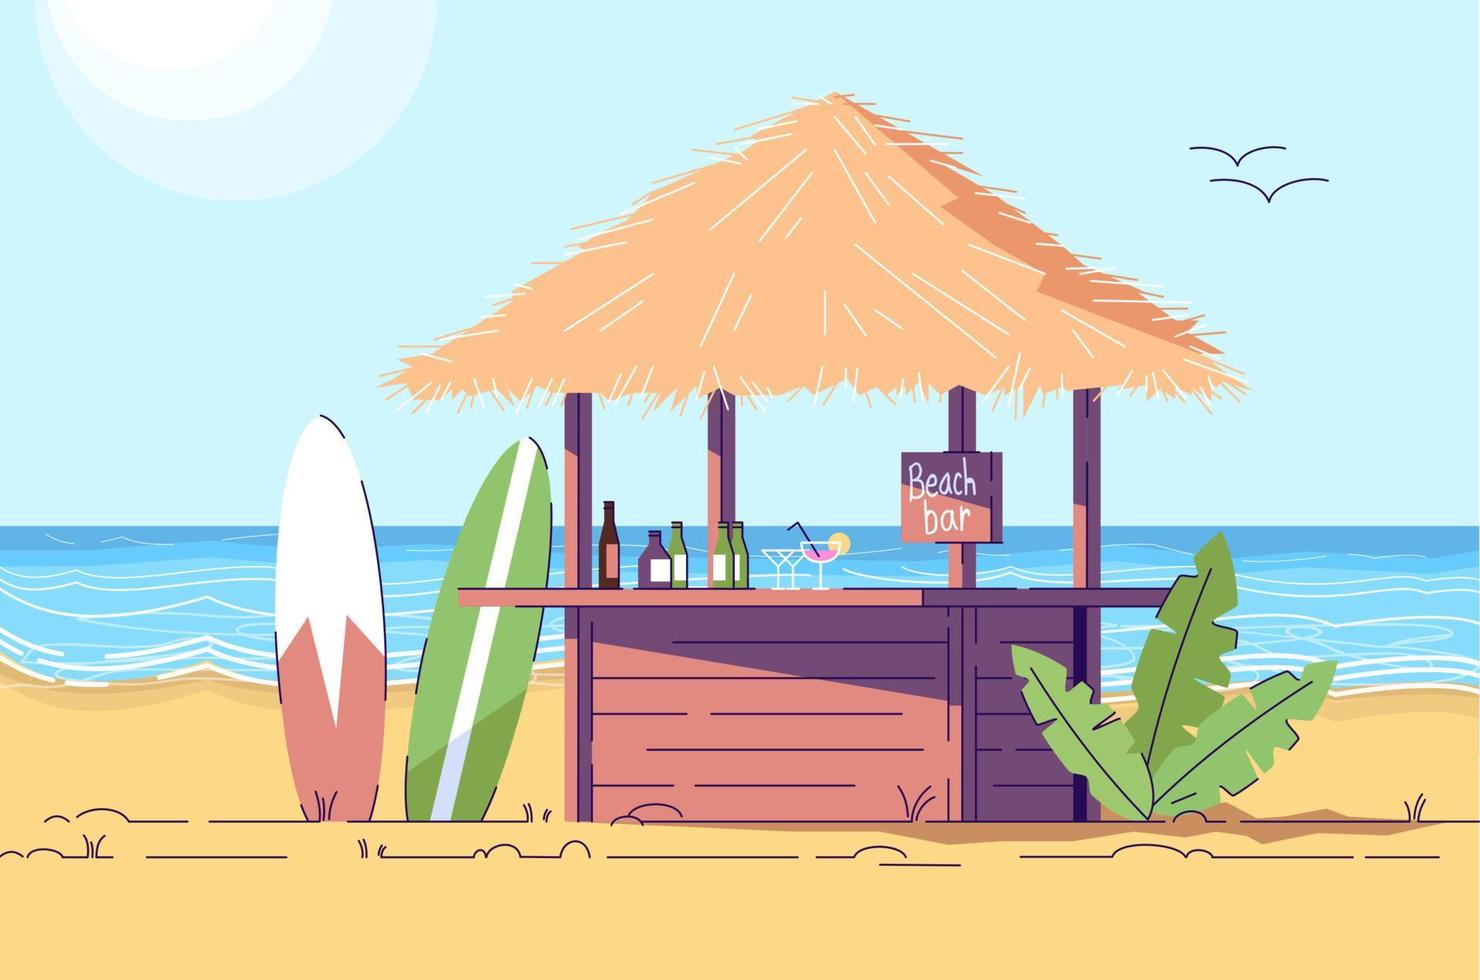 bancone bar spiaggia vuota e tavole da surf doodle piatto illustrazione. scenario di mare. caffè all'aperto in riva al mare. paese esotico. Indonesia turismo personaggio dei cartoni animati 2D con contorno per uso commerciale vettore